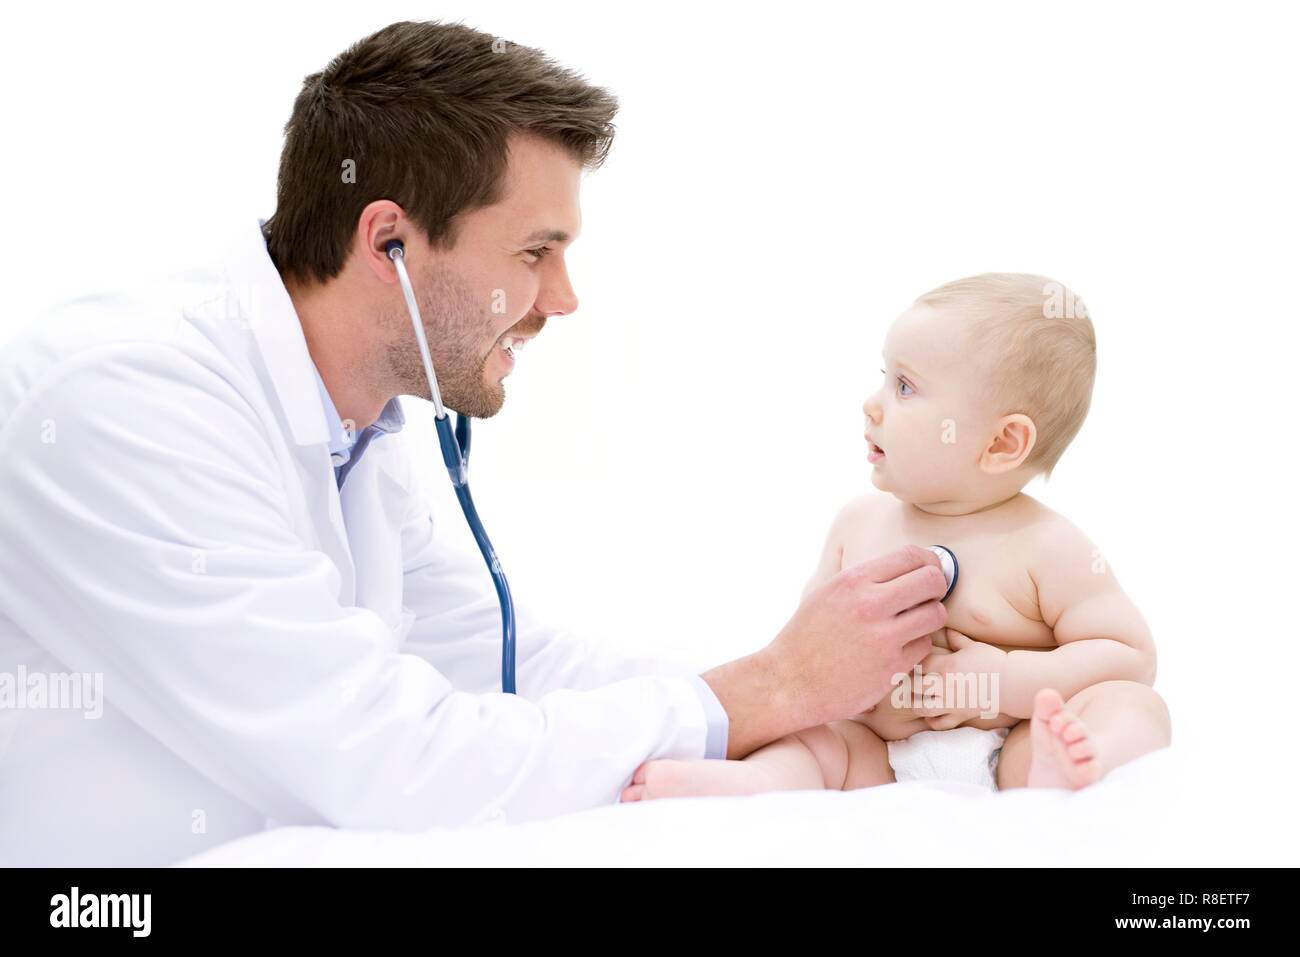 Doctor examining baby using stethoscope. Stock Photo